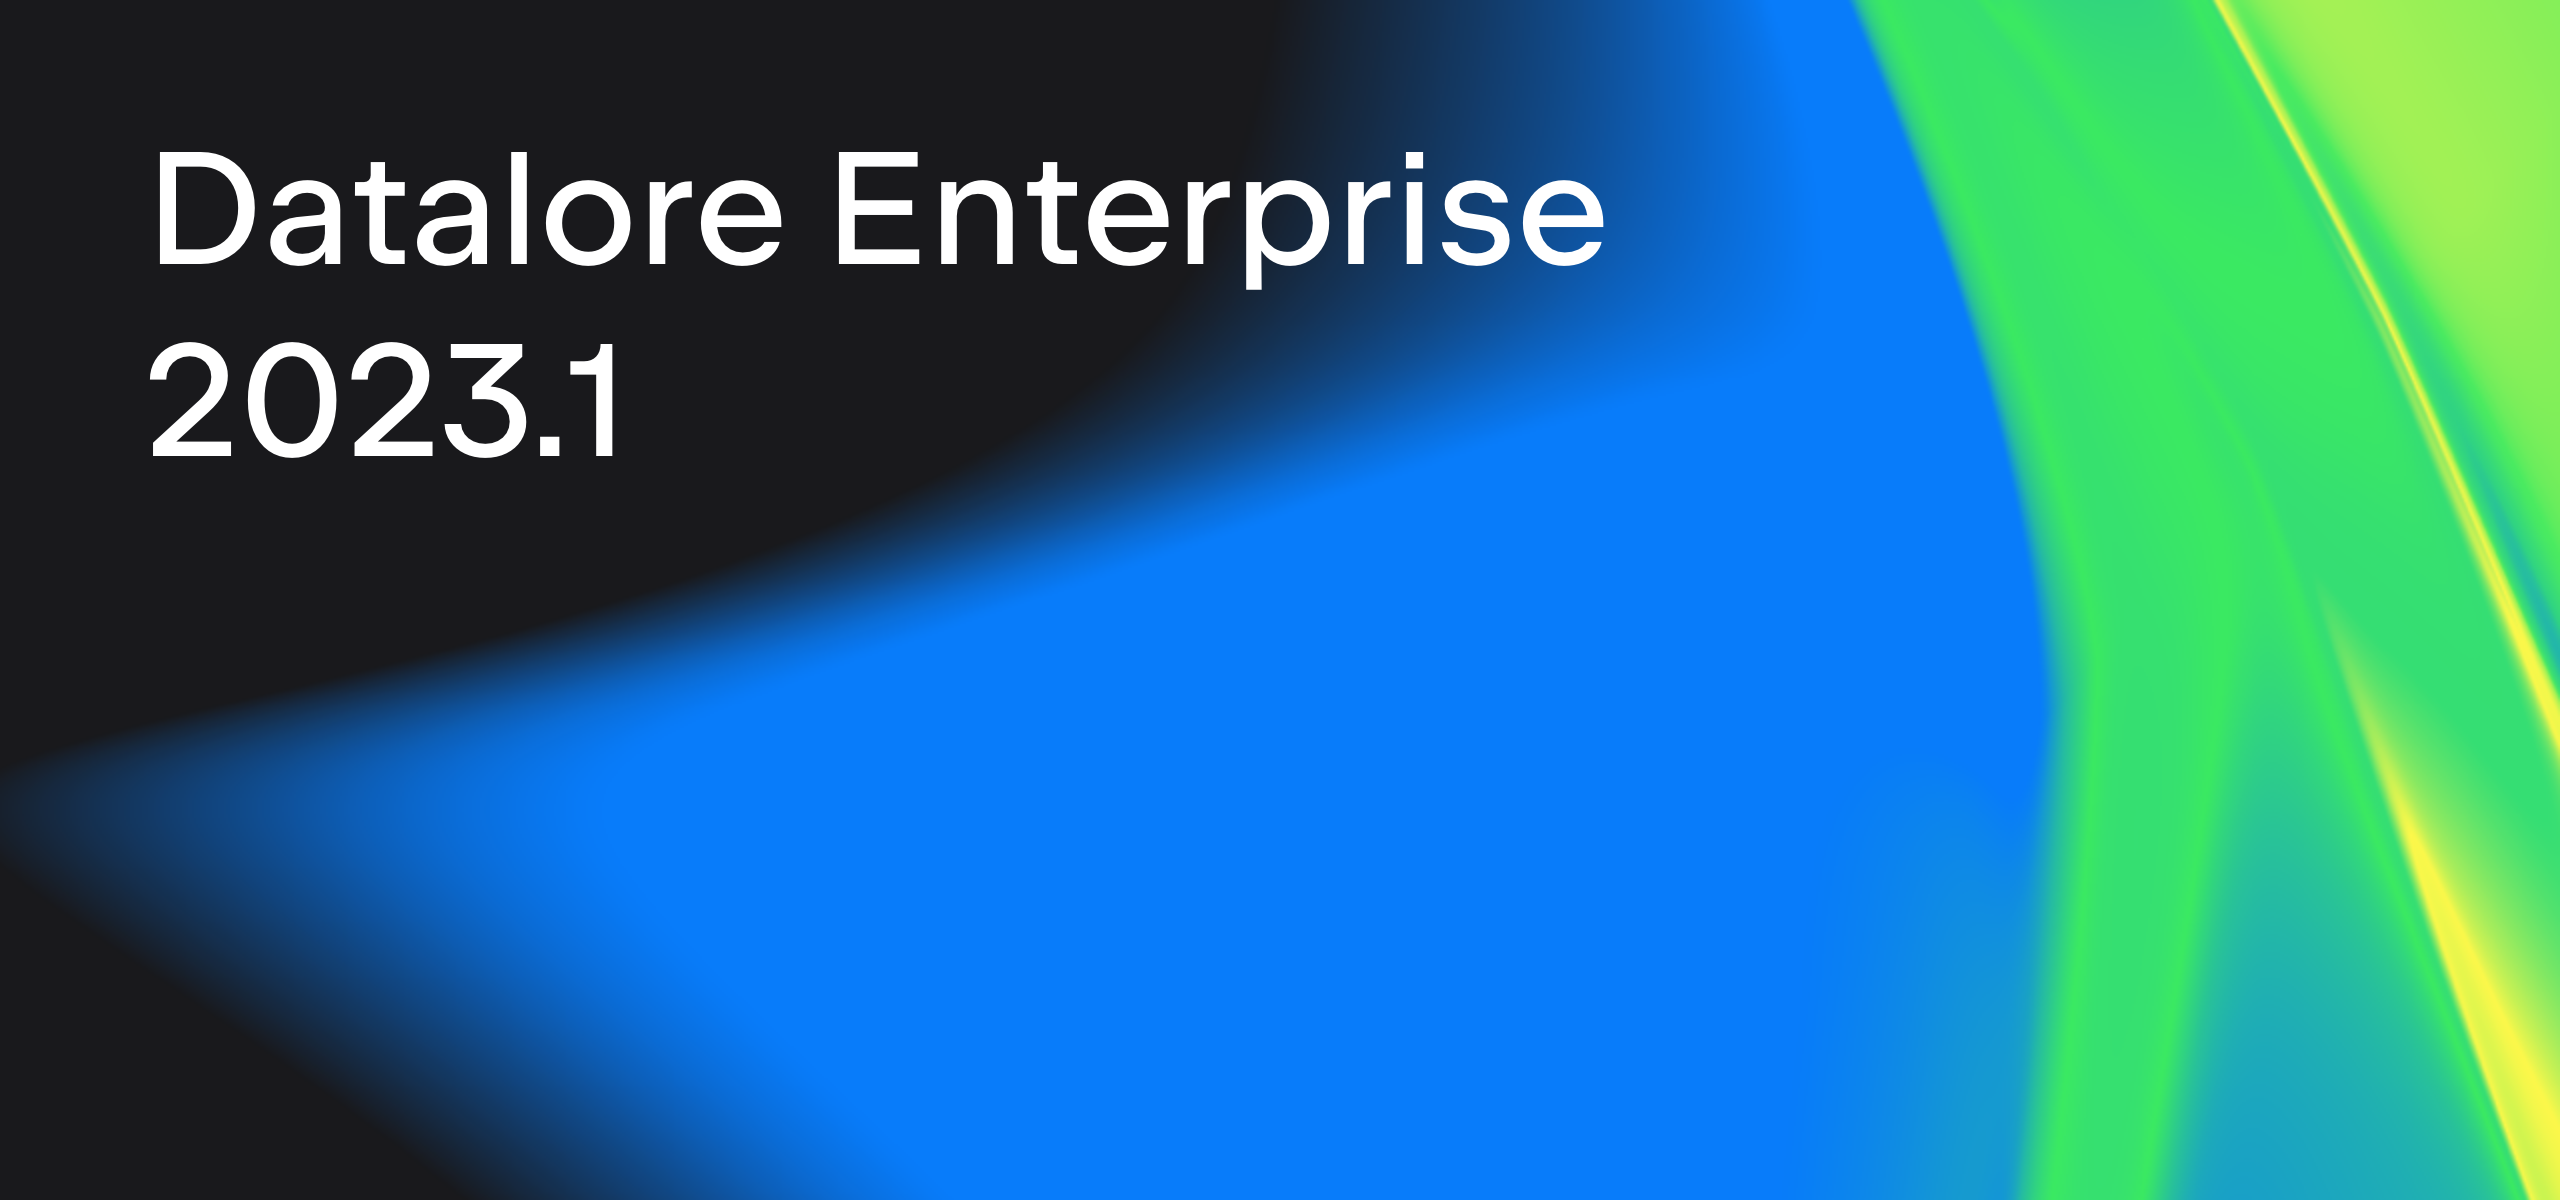 Datalore Enterprise 2023.1